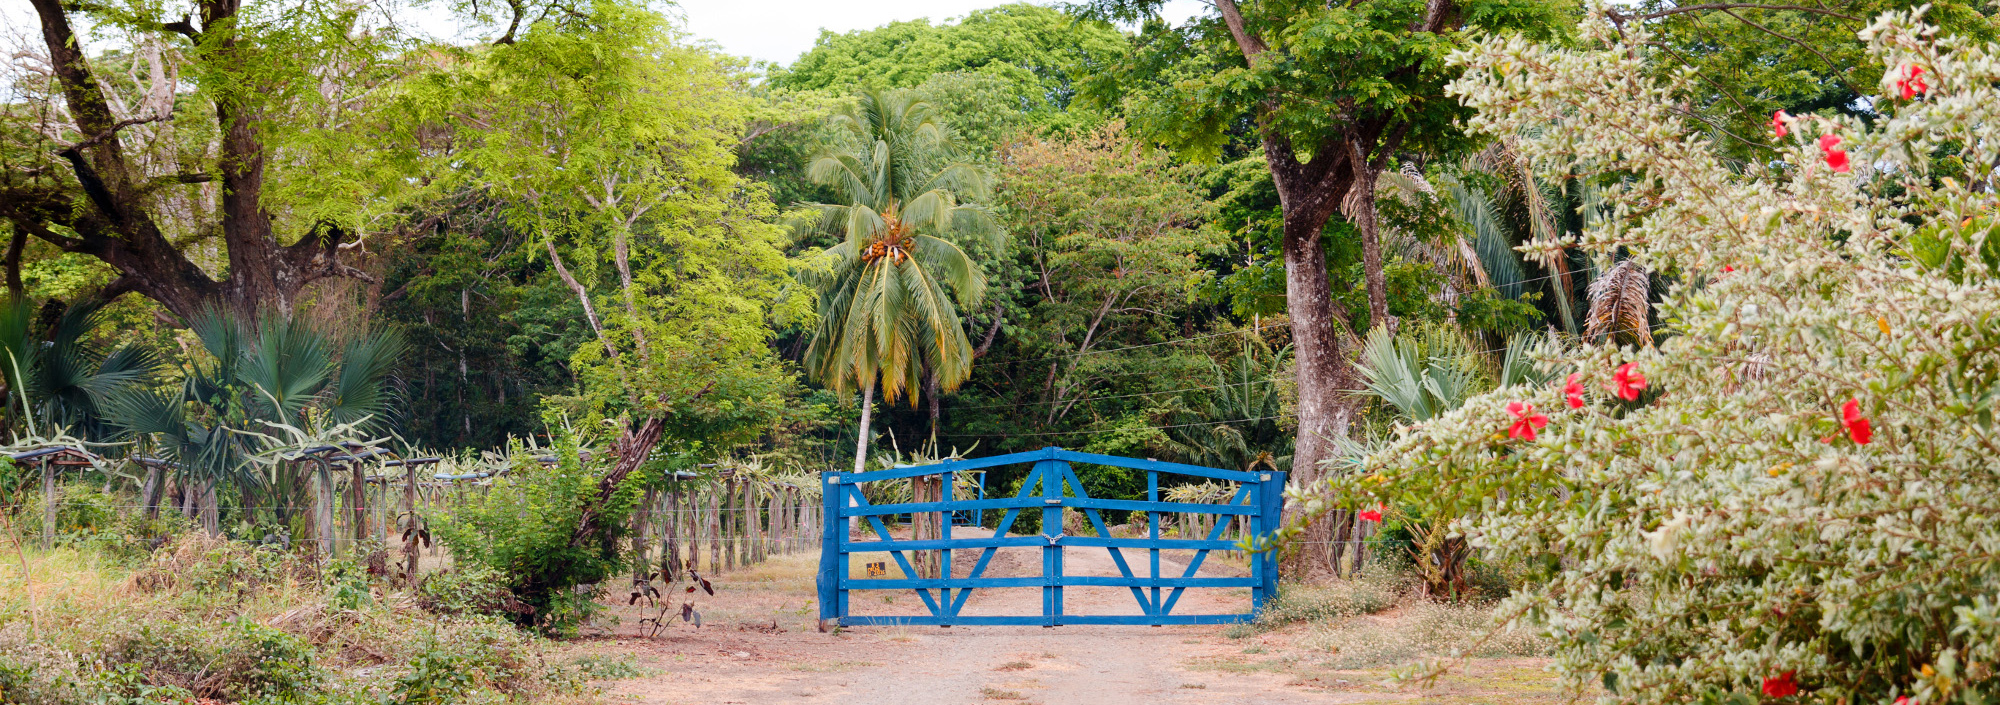 Blaues Tor in Guanacaste in Costa Rica